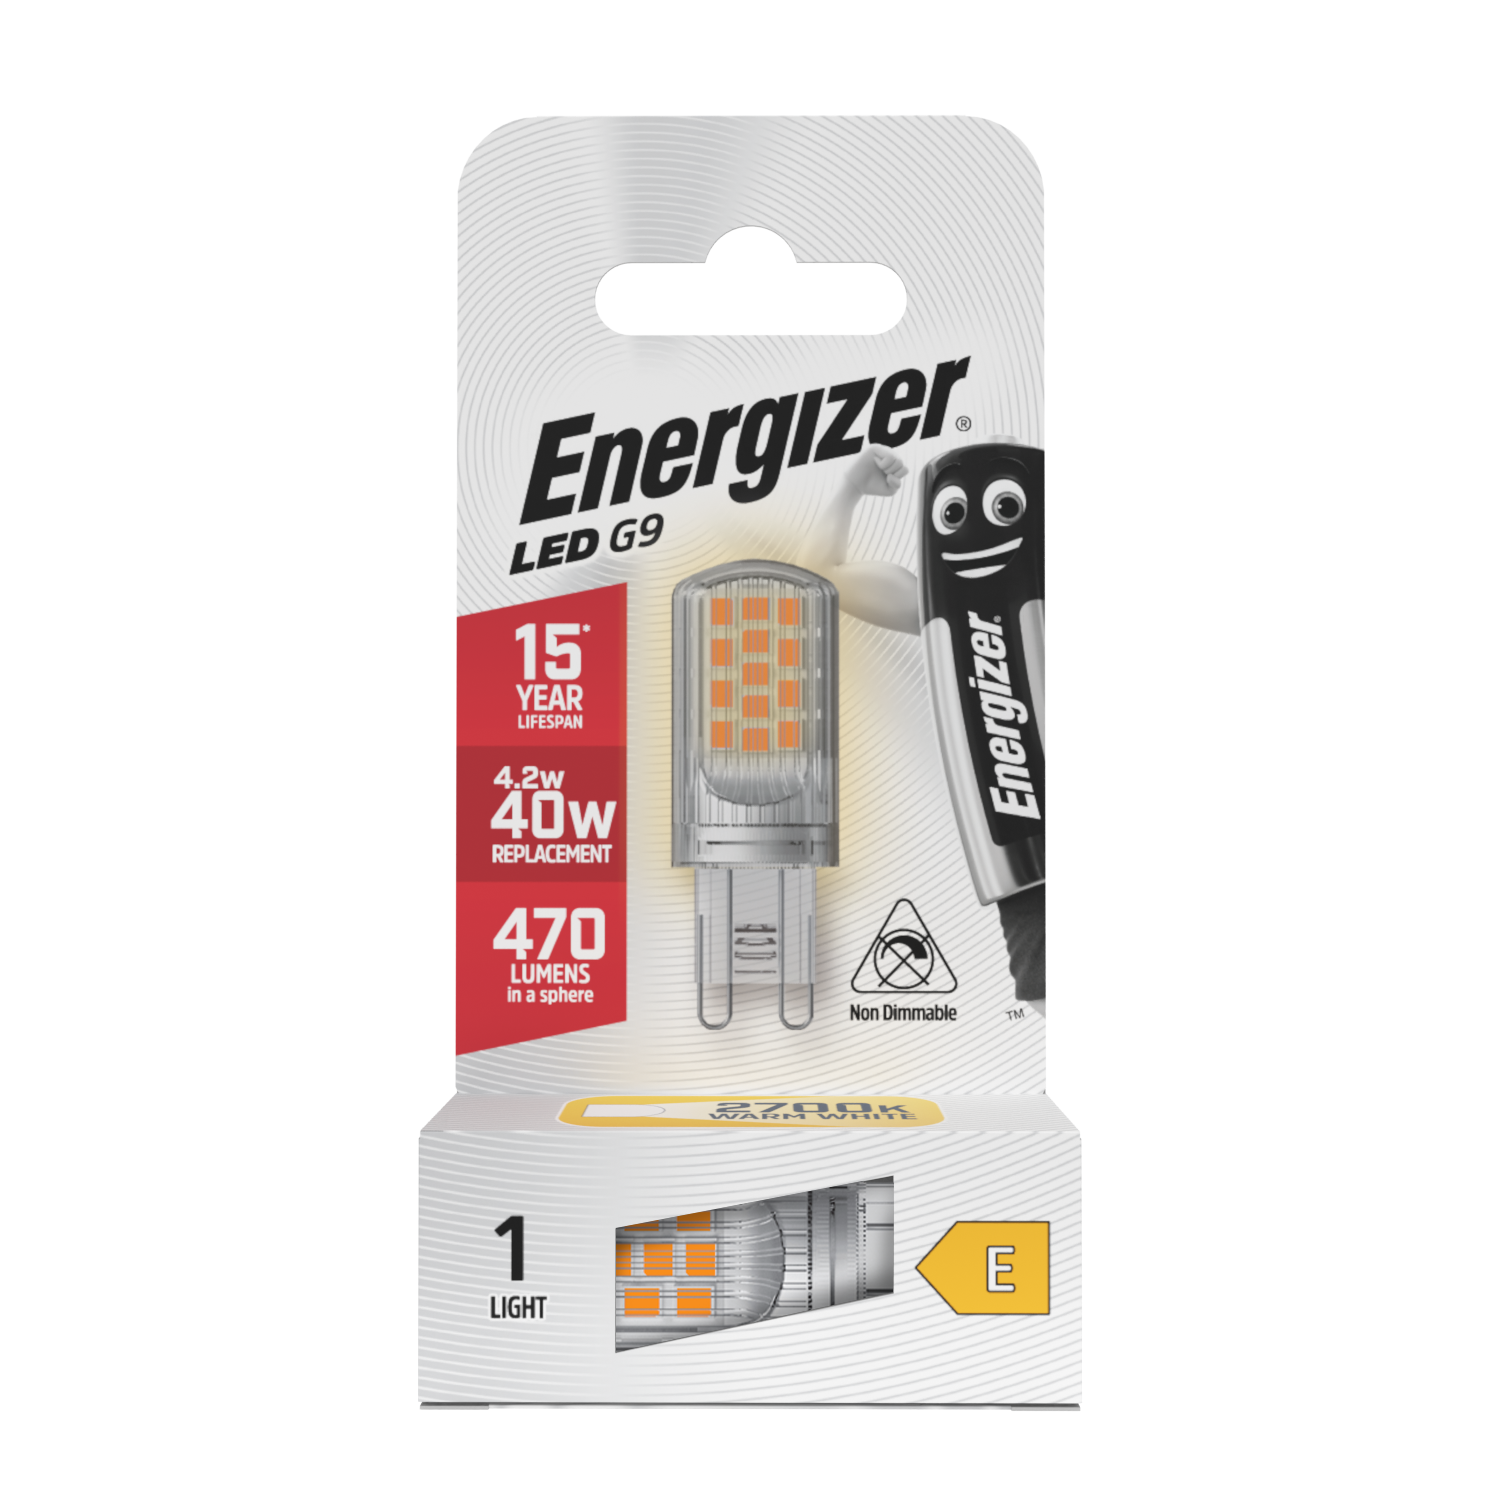 Energizer LED G9 470 Lumen 4,2 W 2.700 K (Warmweiß), Packung mit 1 Stück